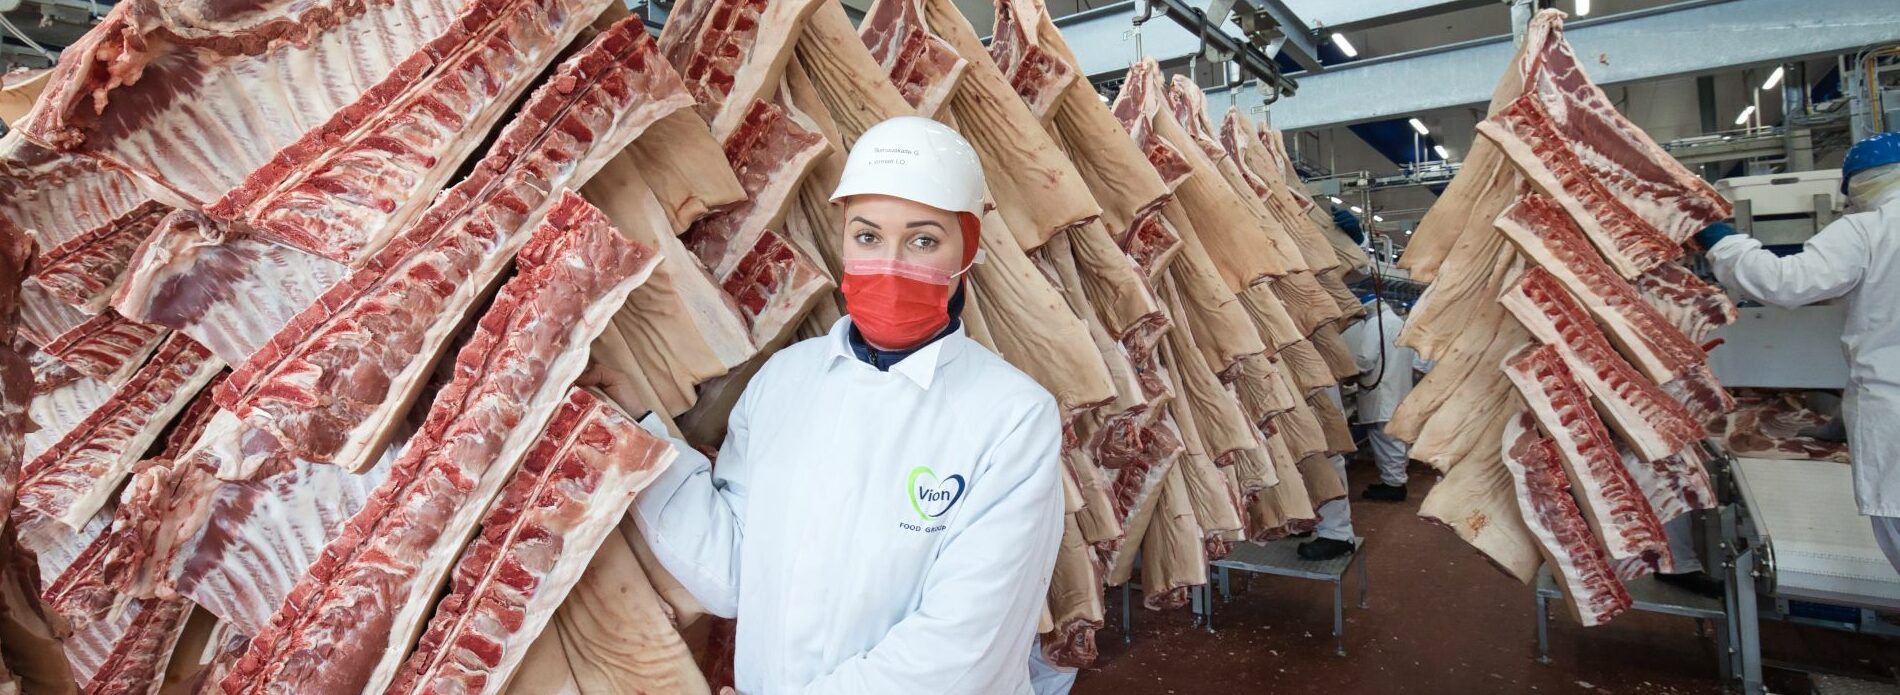 Qualitätsprogramme: Schweinefleisch Qualitätsprogramme und -Zertifizierungen, z.B. Initiative Tierwohl, Geprüfte Qualität Bayern etc.